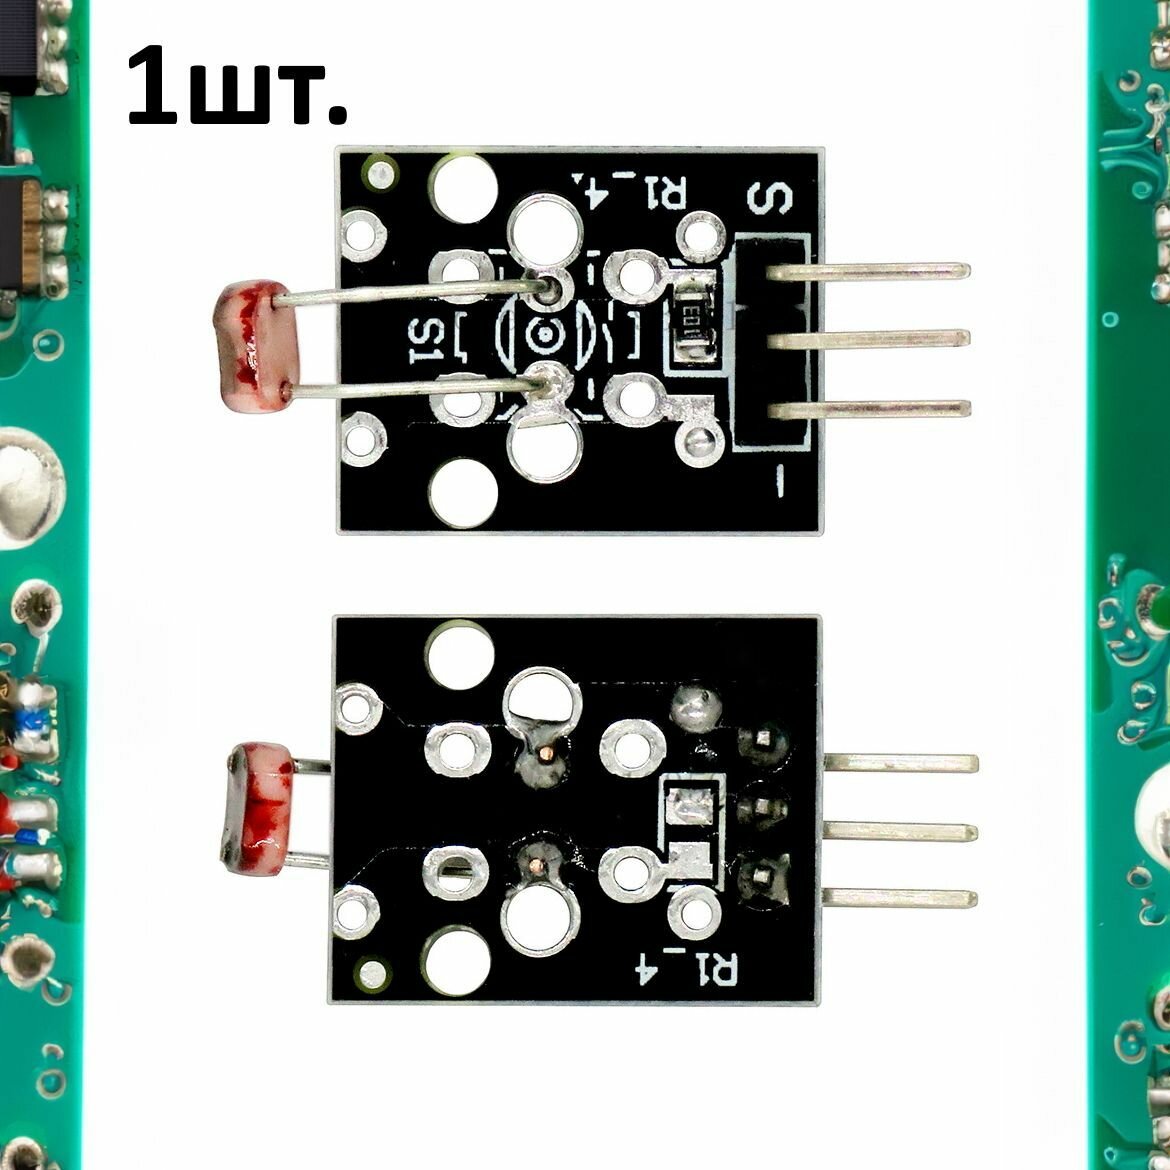 Модуль фоторезистора KY-018 (HW-486) для Arduino